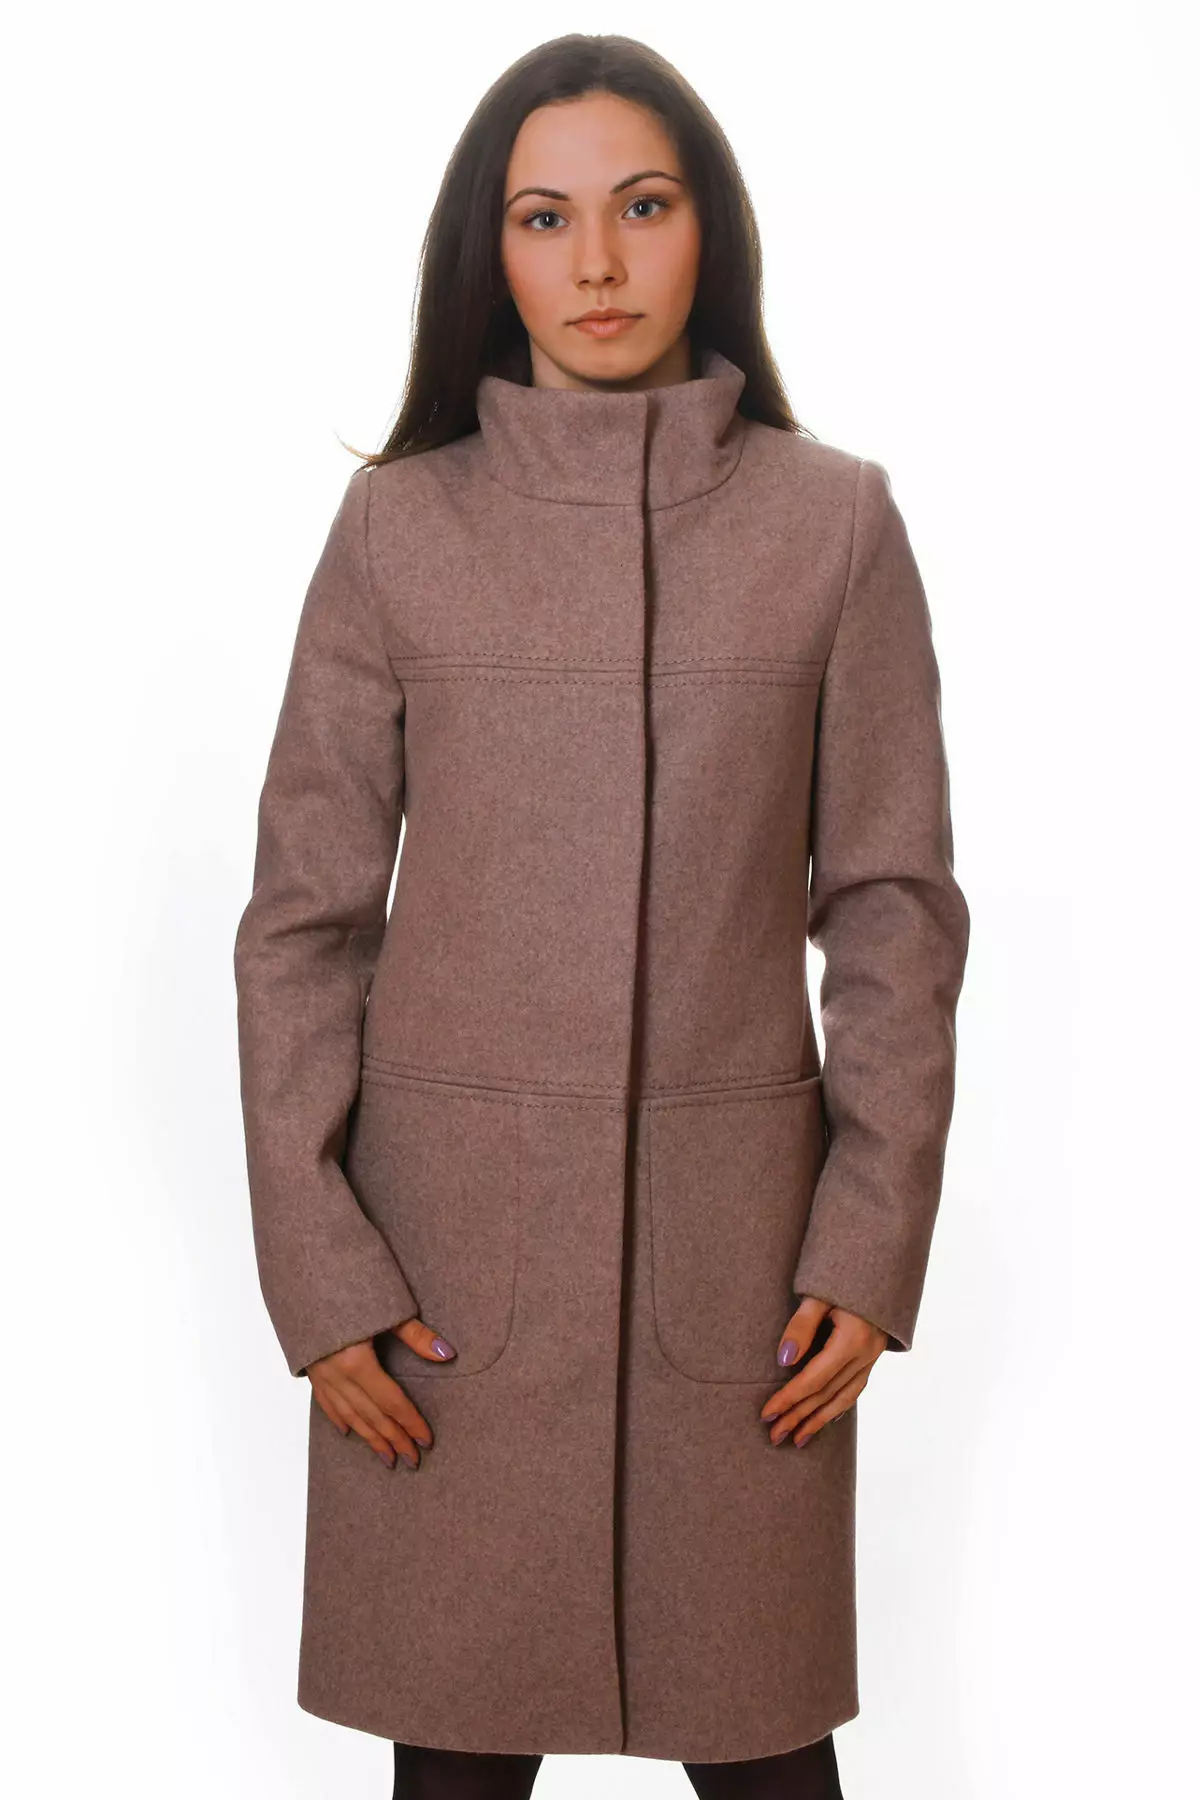 Female frakke Spring 2021 (356 Billeder): Fra russiske producenter, modeller, stilarter og stilarter, quiltet, kort, dæmpning, læder 623_35